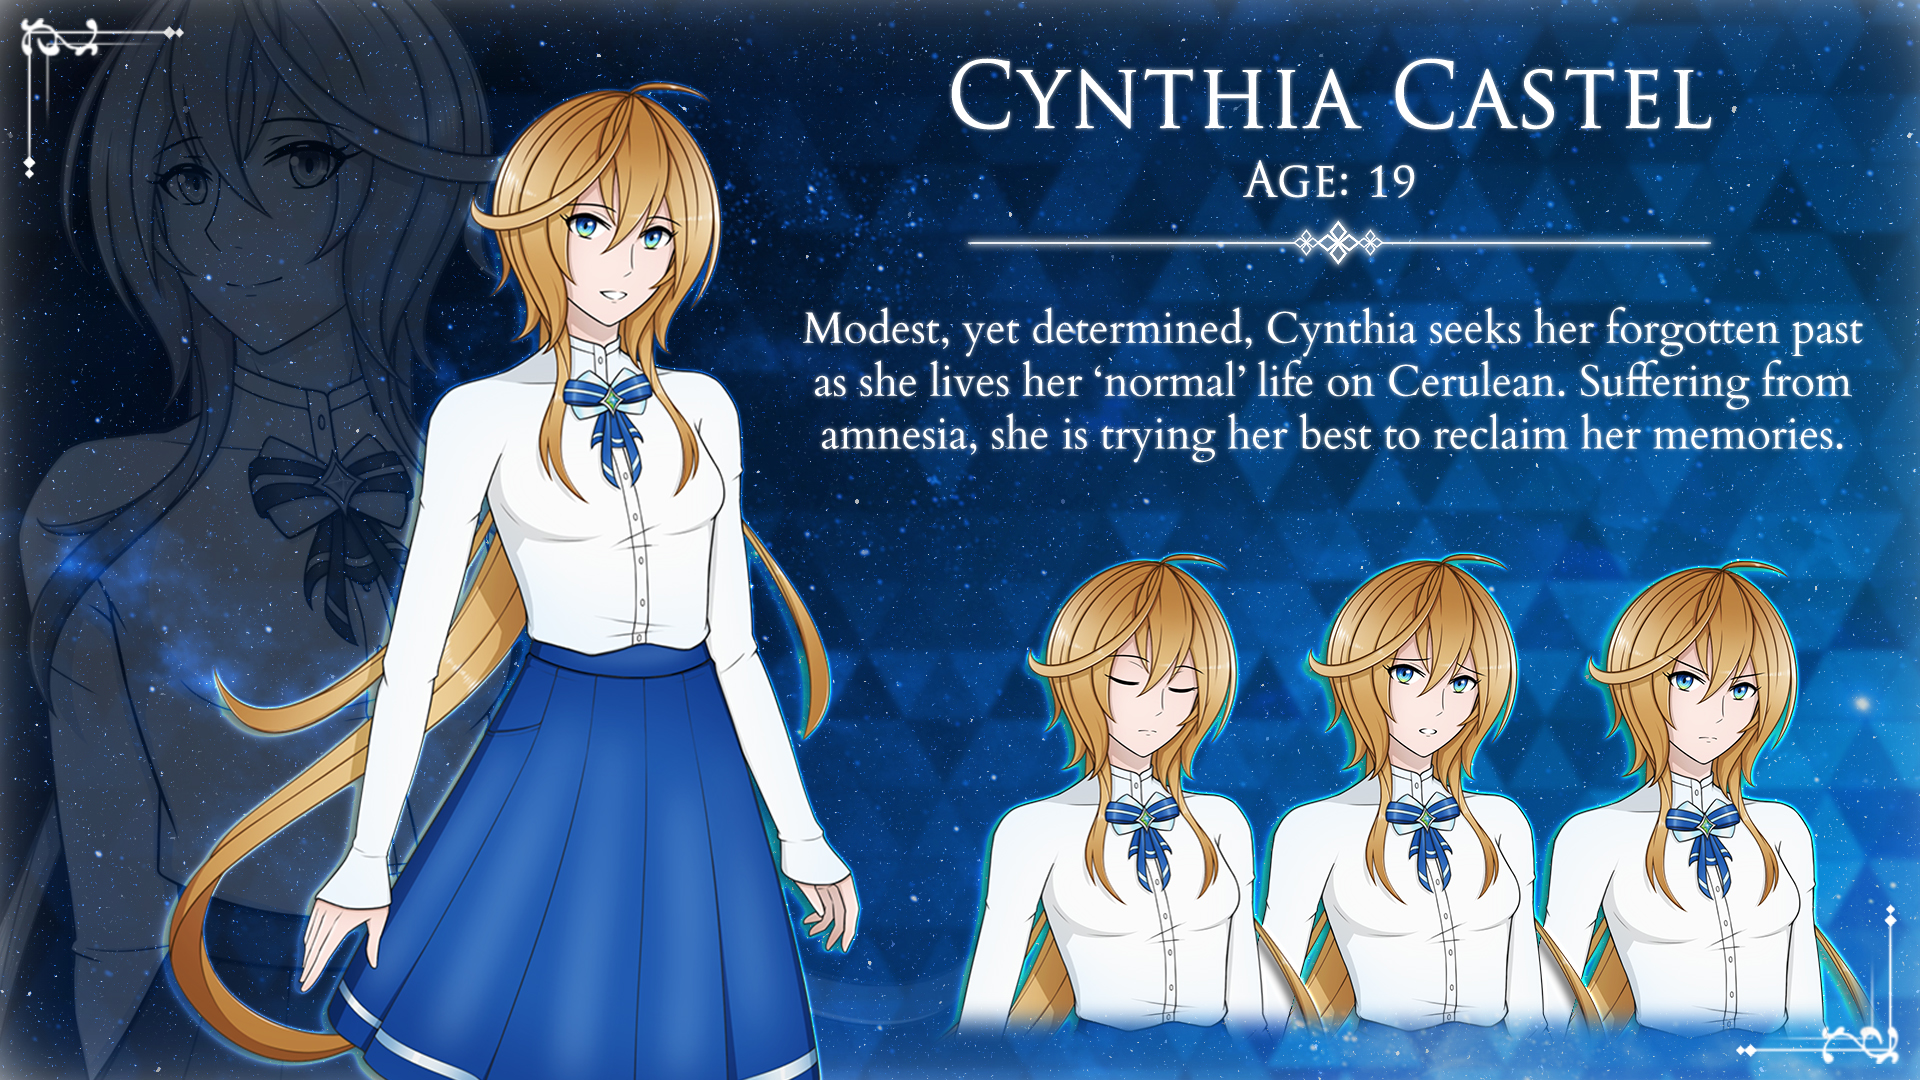 Protagonist - Cynthia Castel